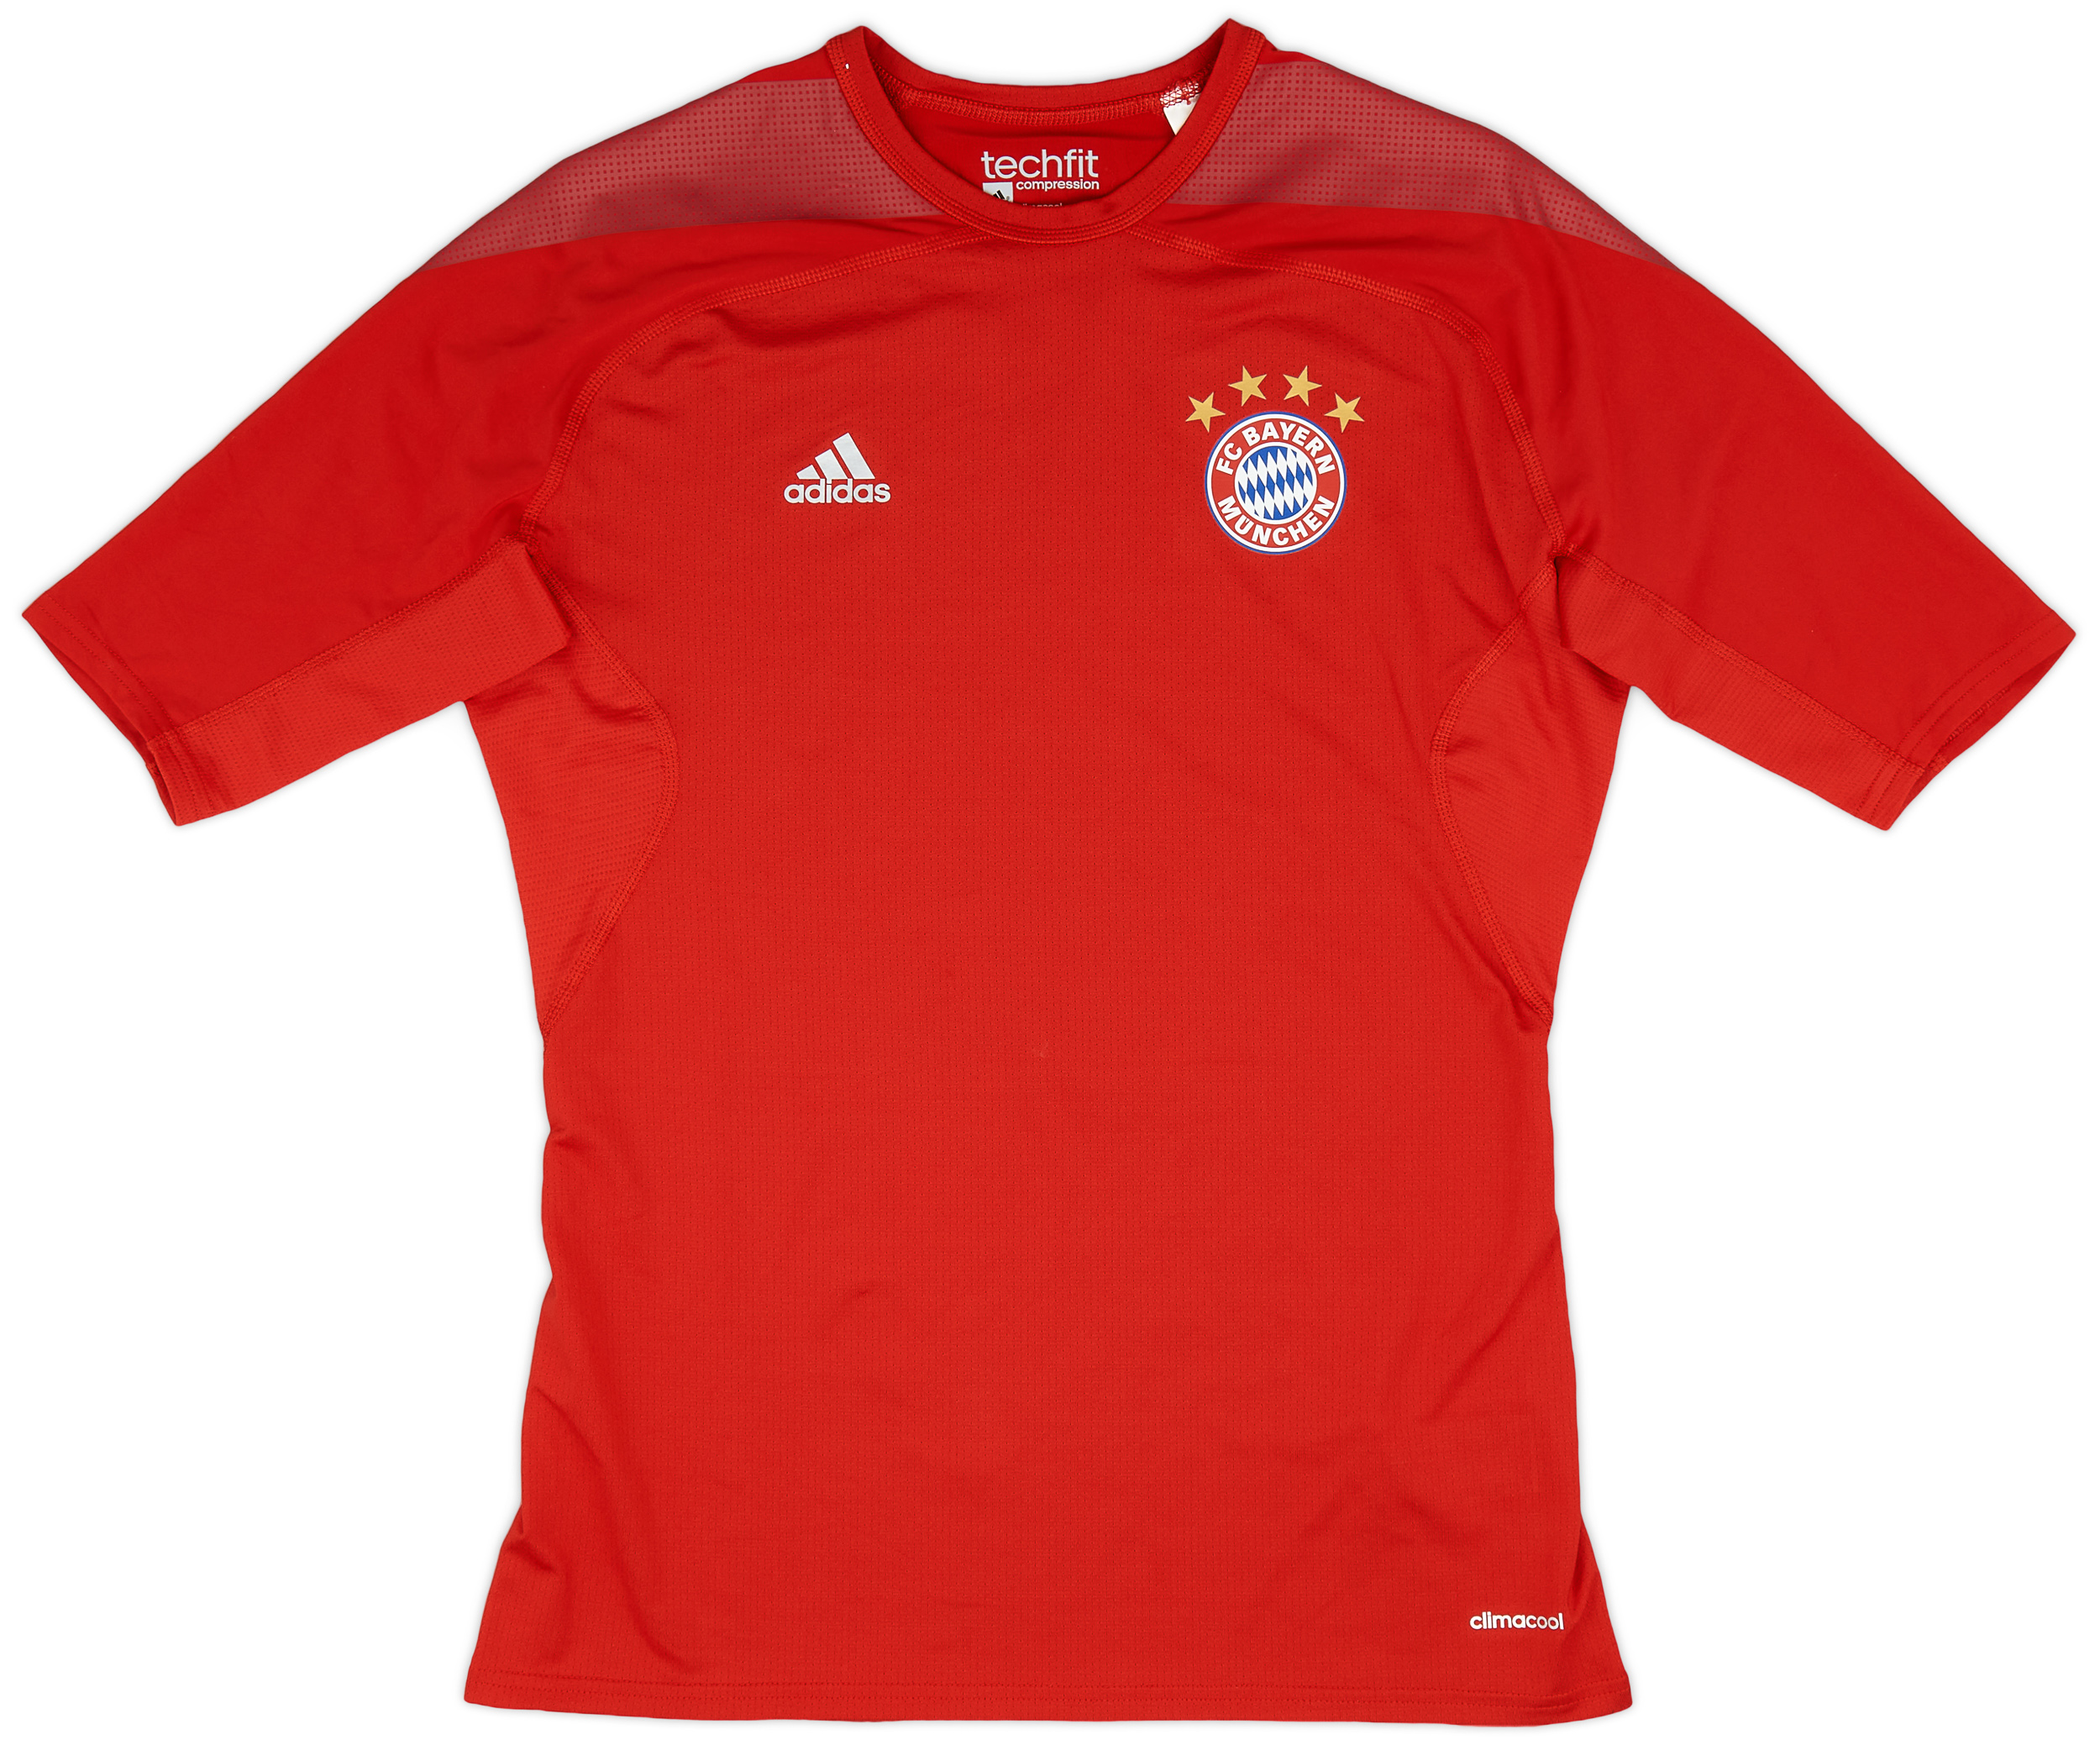 2015-16 Bayern Munich adidas Techfit Baselayer Shirt - 10/10 - ()